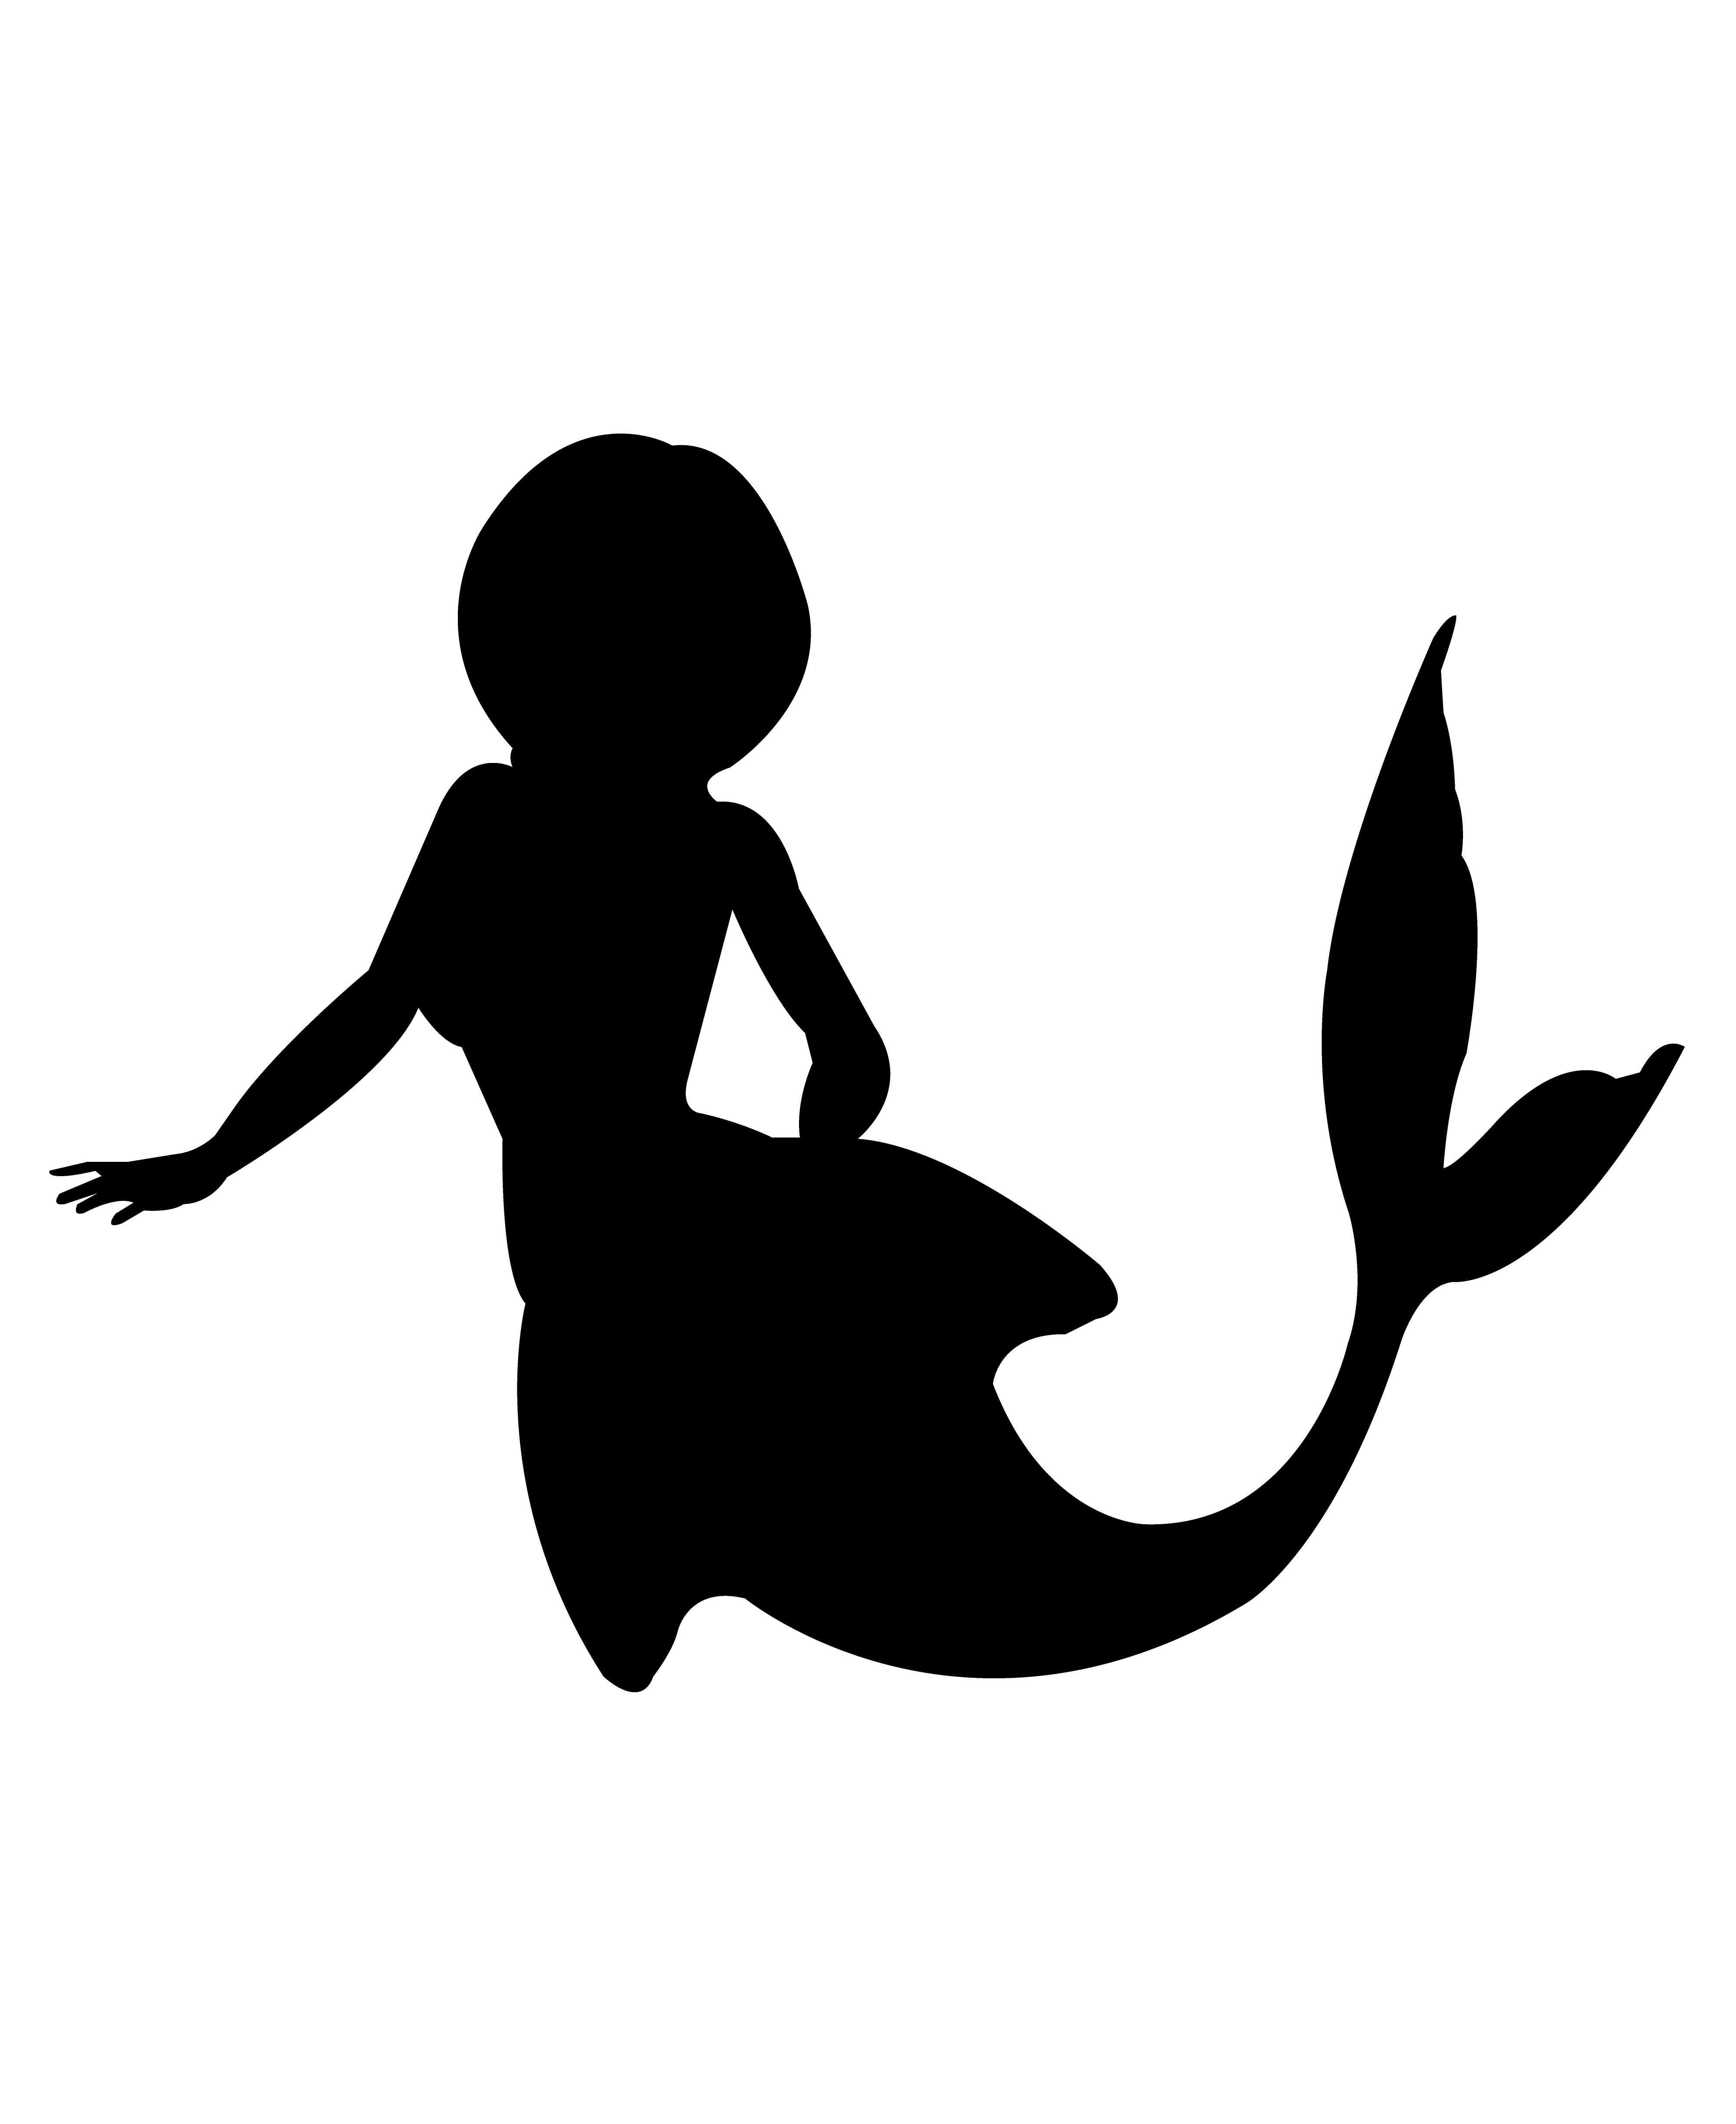 Mermaid Silhouette Drawings